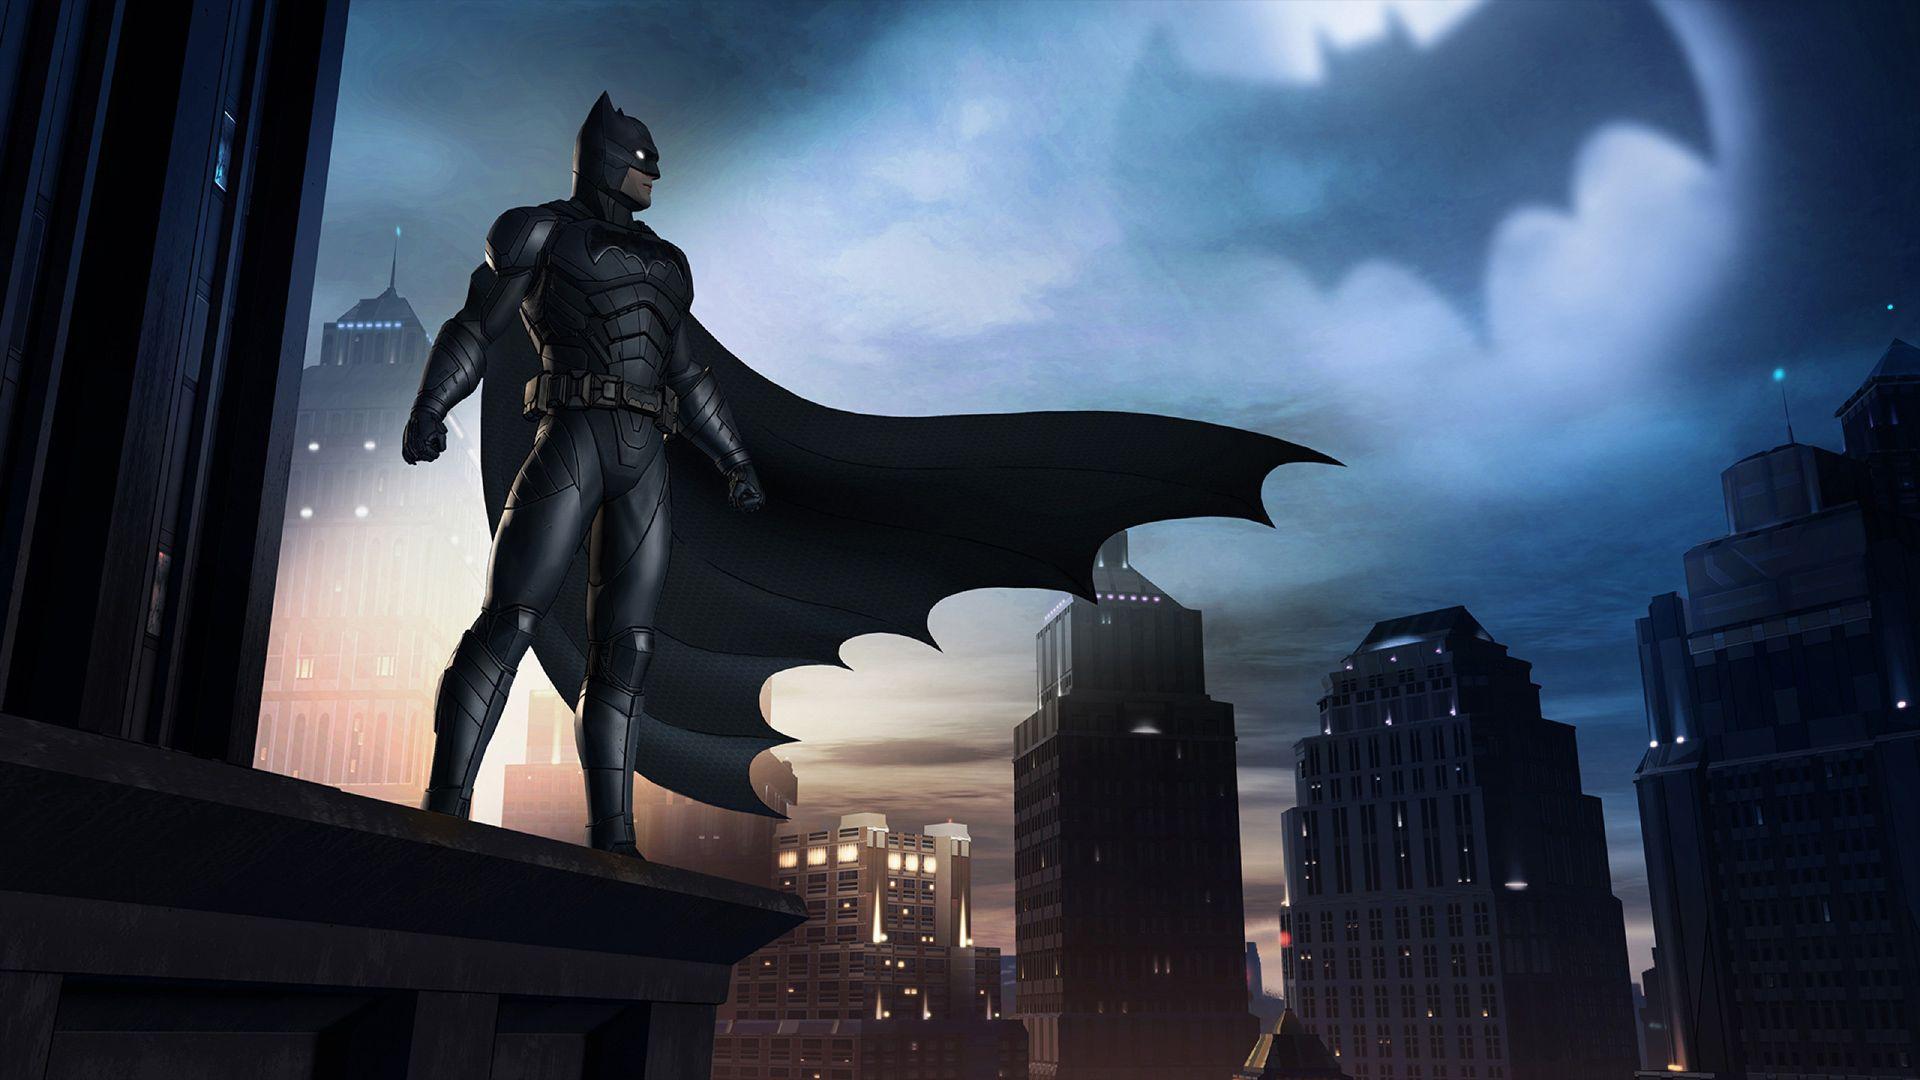 Batman on a rooftop. Wallpaper from Batman: The Telltale Series